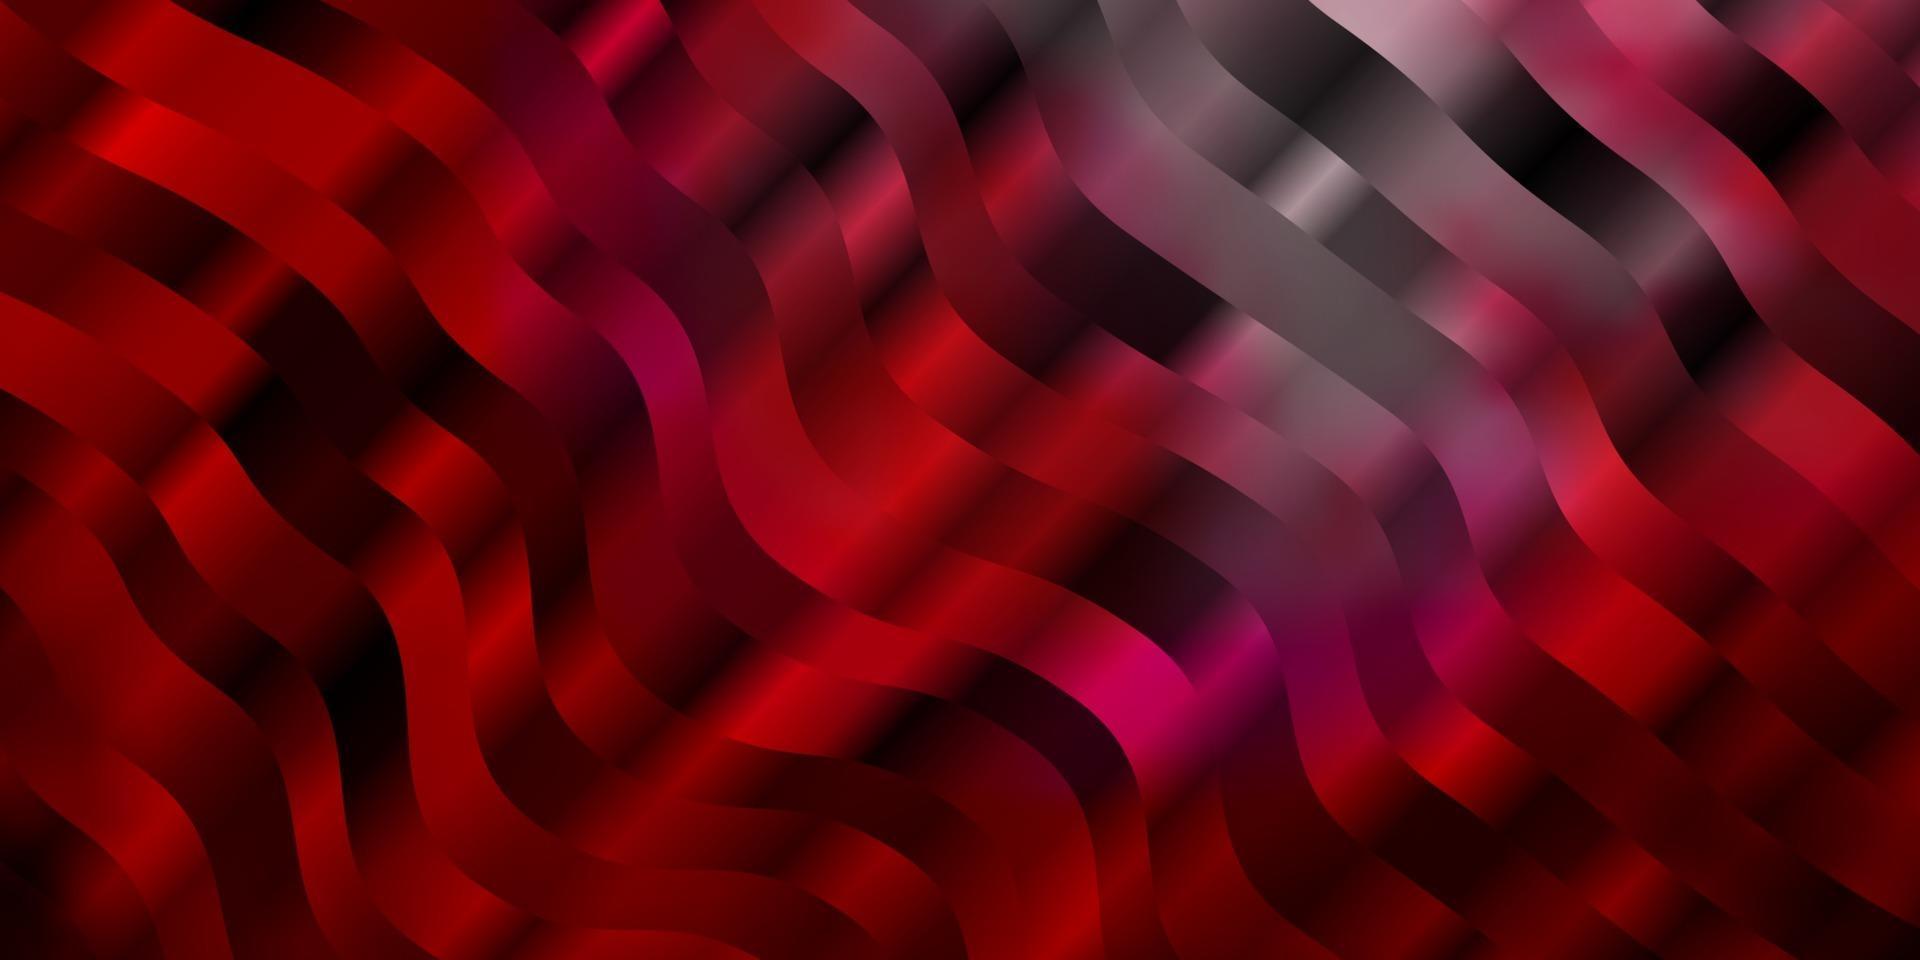 ljusrosa, röd vektorlayout med kurvor. vektor